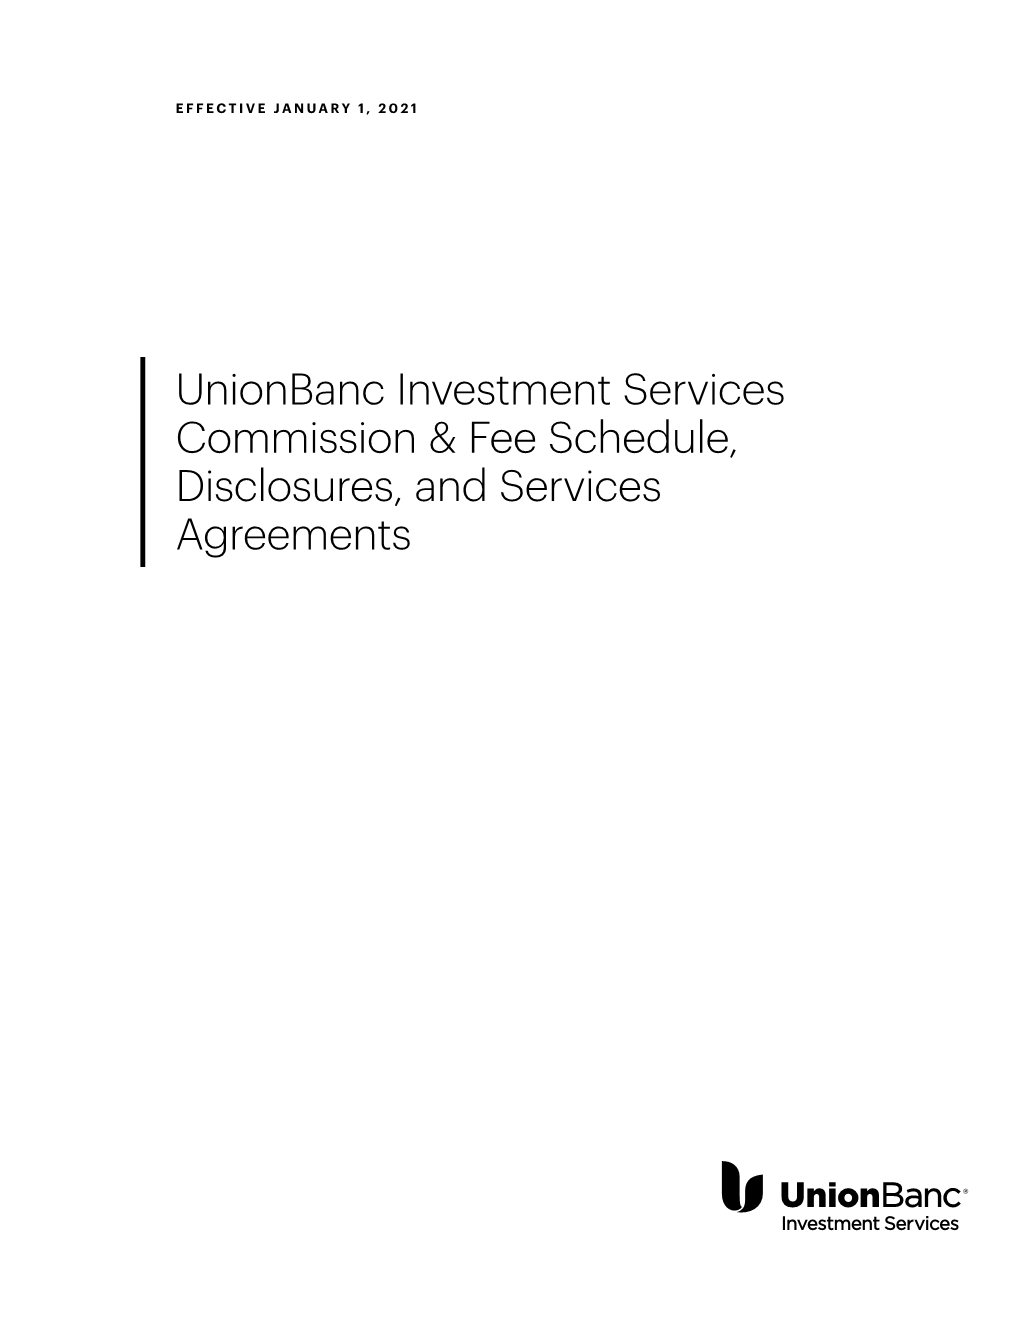 Unionbanc Investment Services Commission &